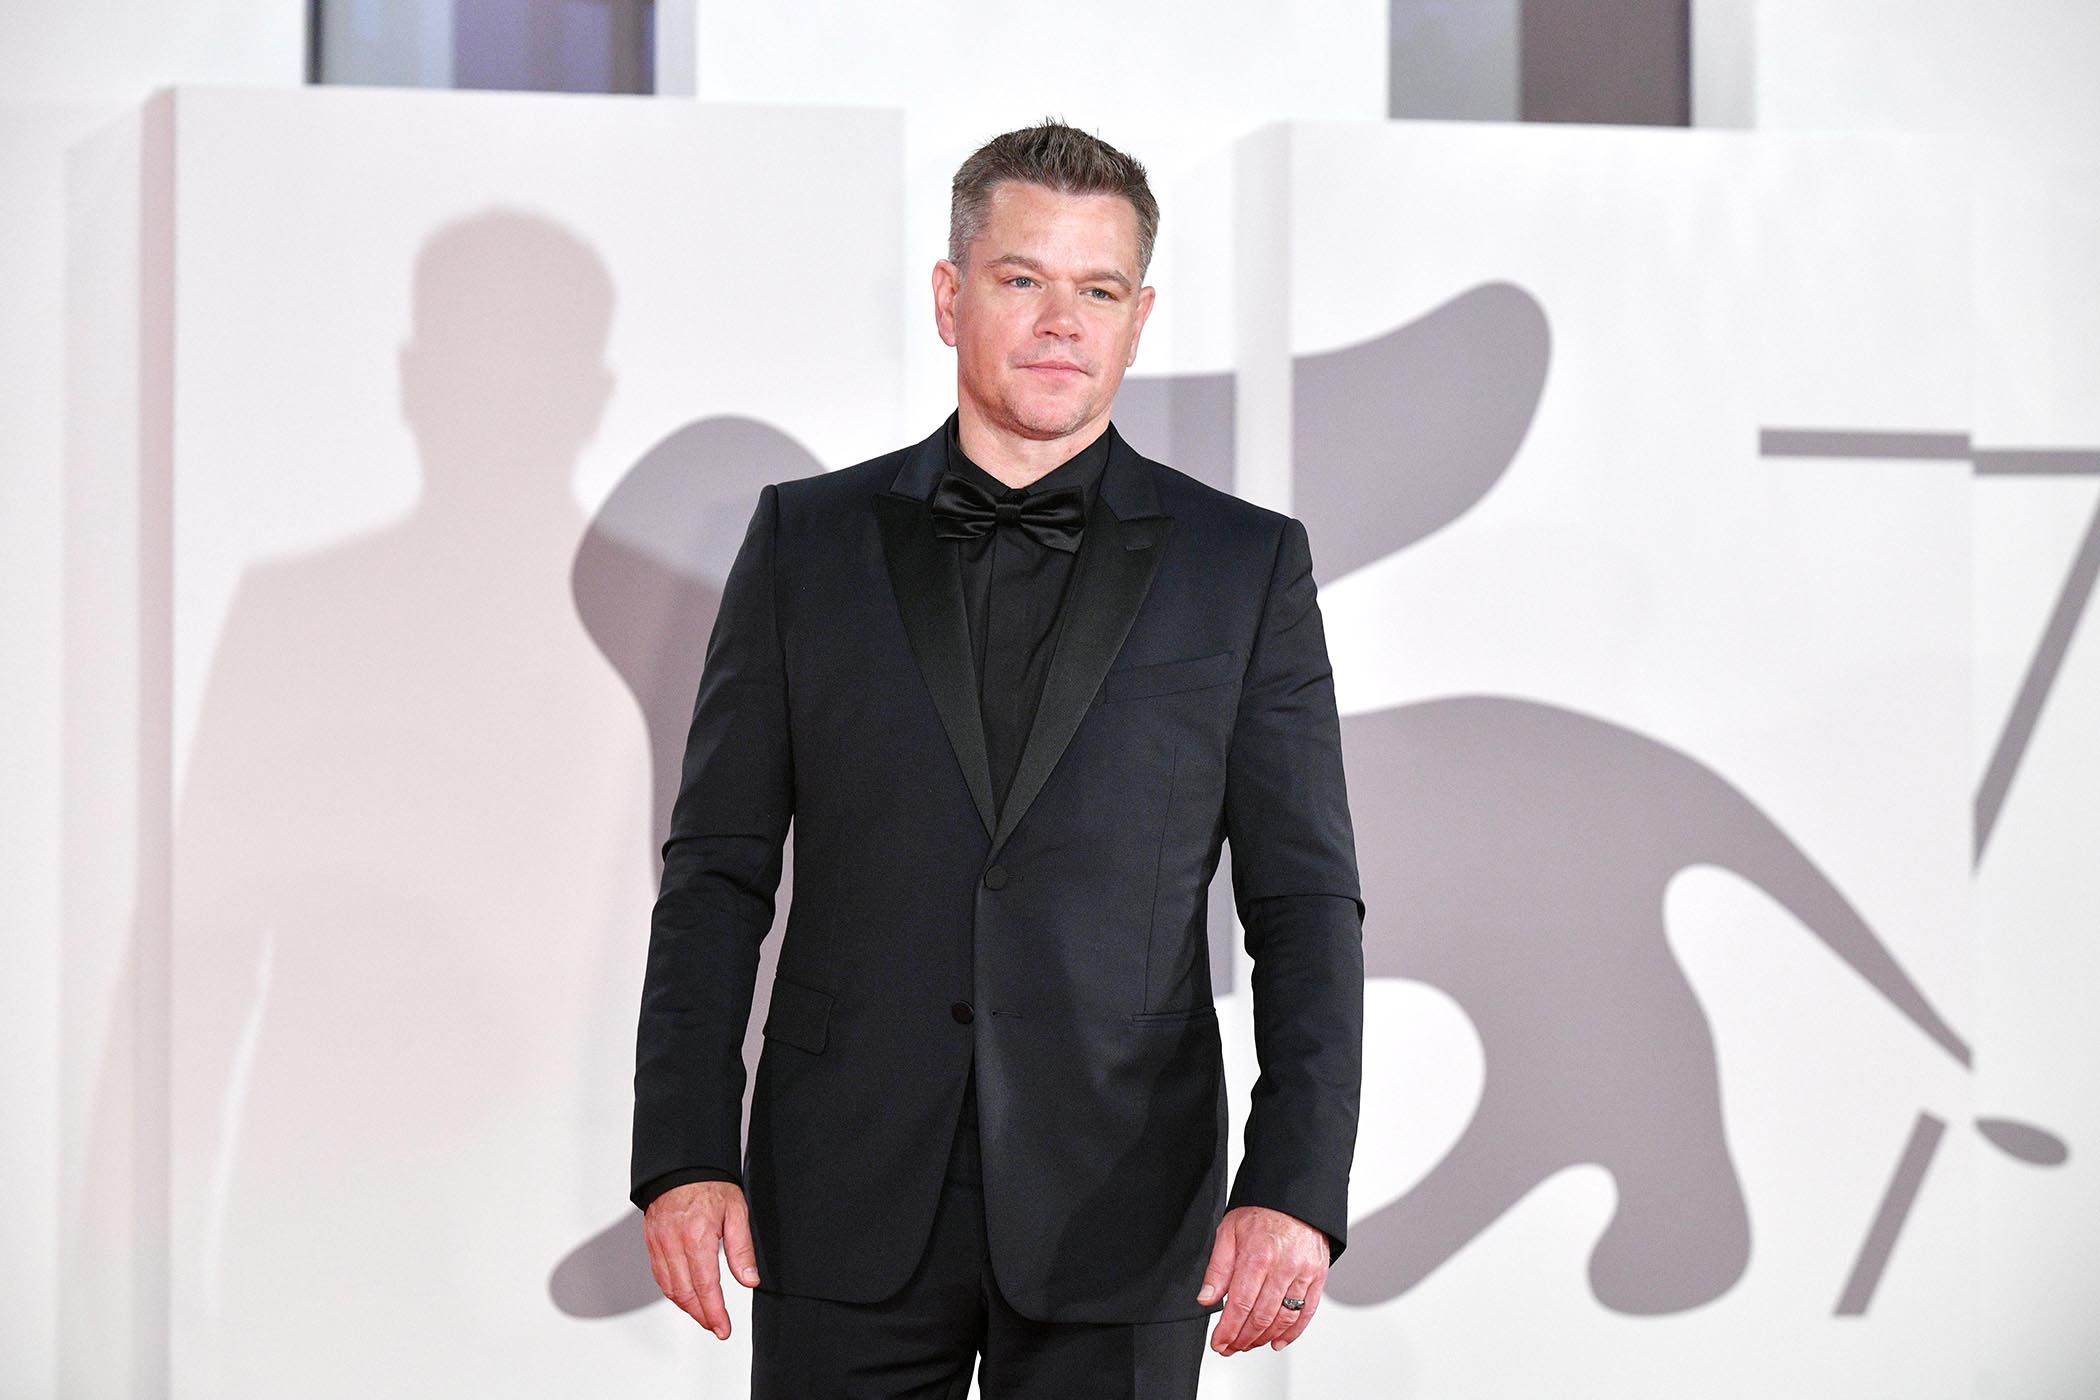 O maior arrependimento da carreira de Matt Damon foi recusar um papel de US $ 250 milhões